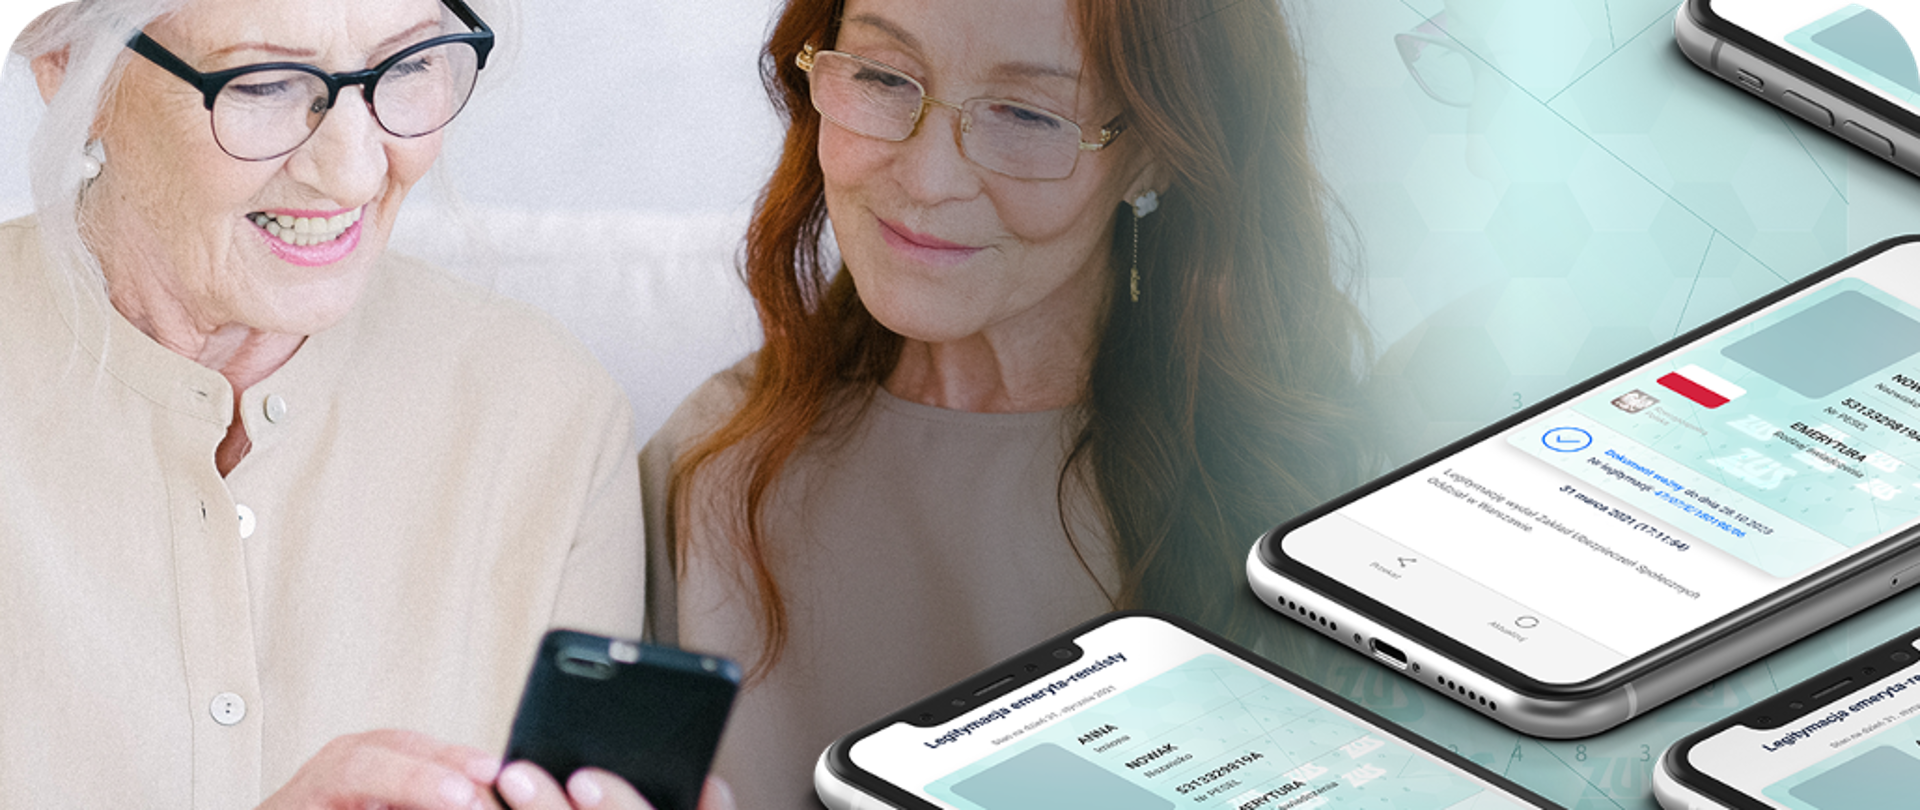 Dwie kobiety w wieku emerytalnym oglądają ekran smartfona (w domyśle na ekranie wyświetlona jest Legitymacja emeryta-rencisty). Na obraz nałożona jest wizualizacja dokumentu.